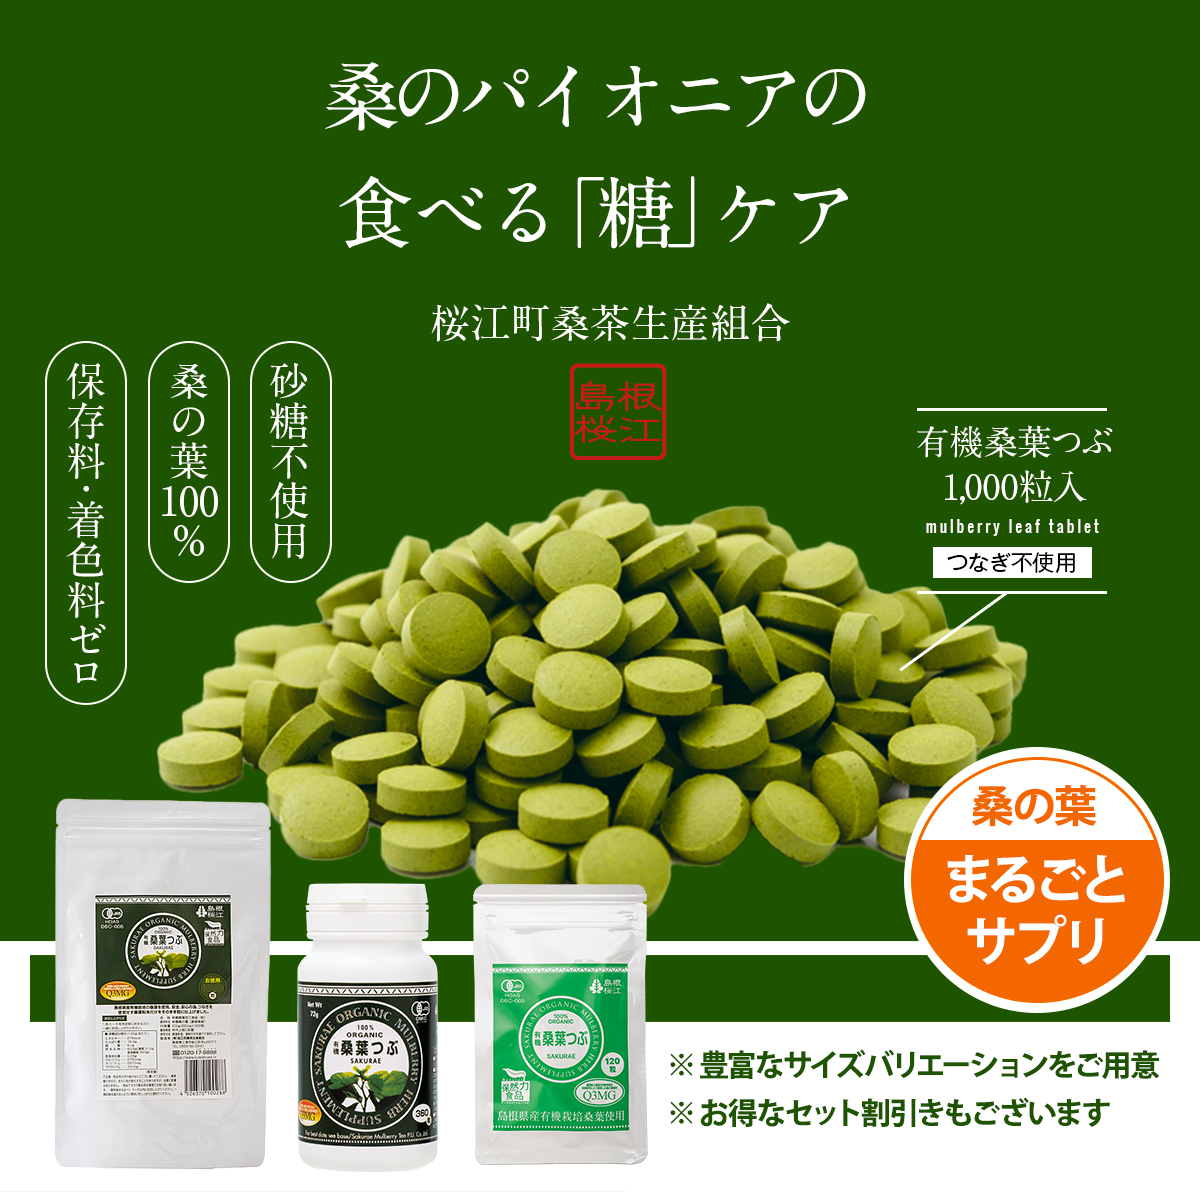 桜江町桑茶生産組合 有機桑葉つぶ 72g×3個セット